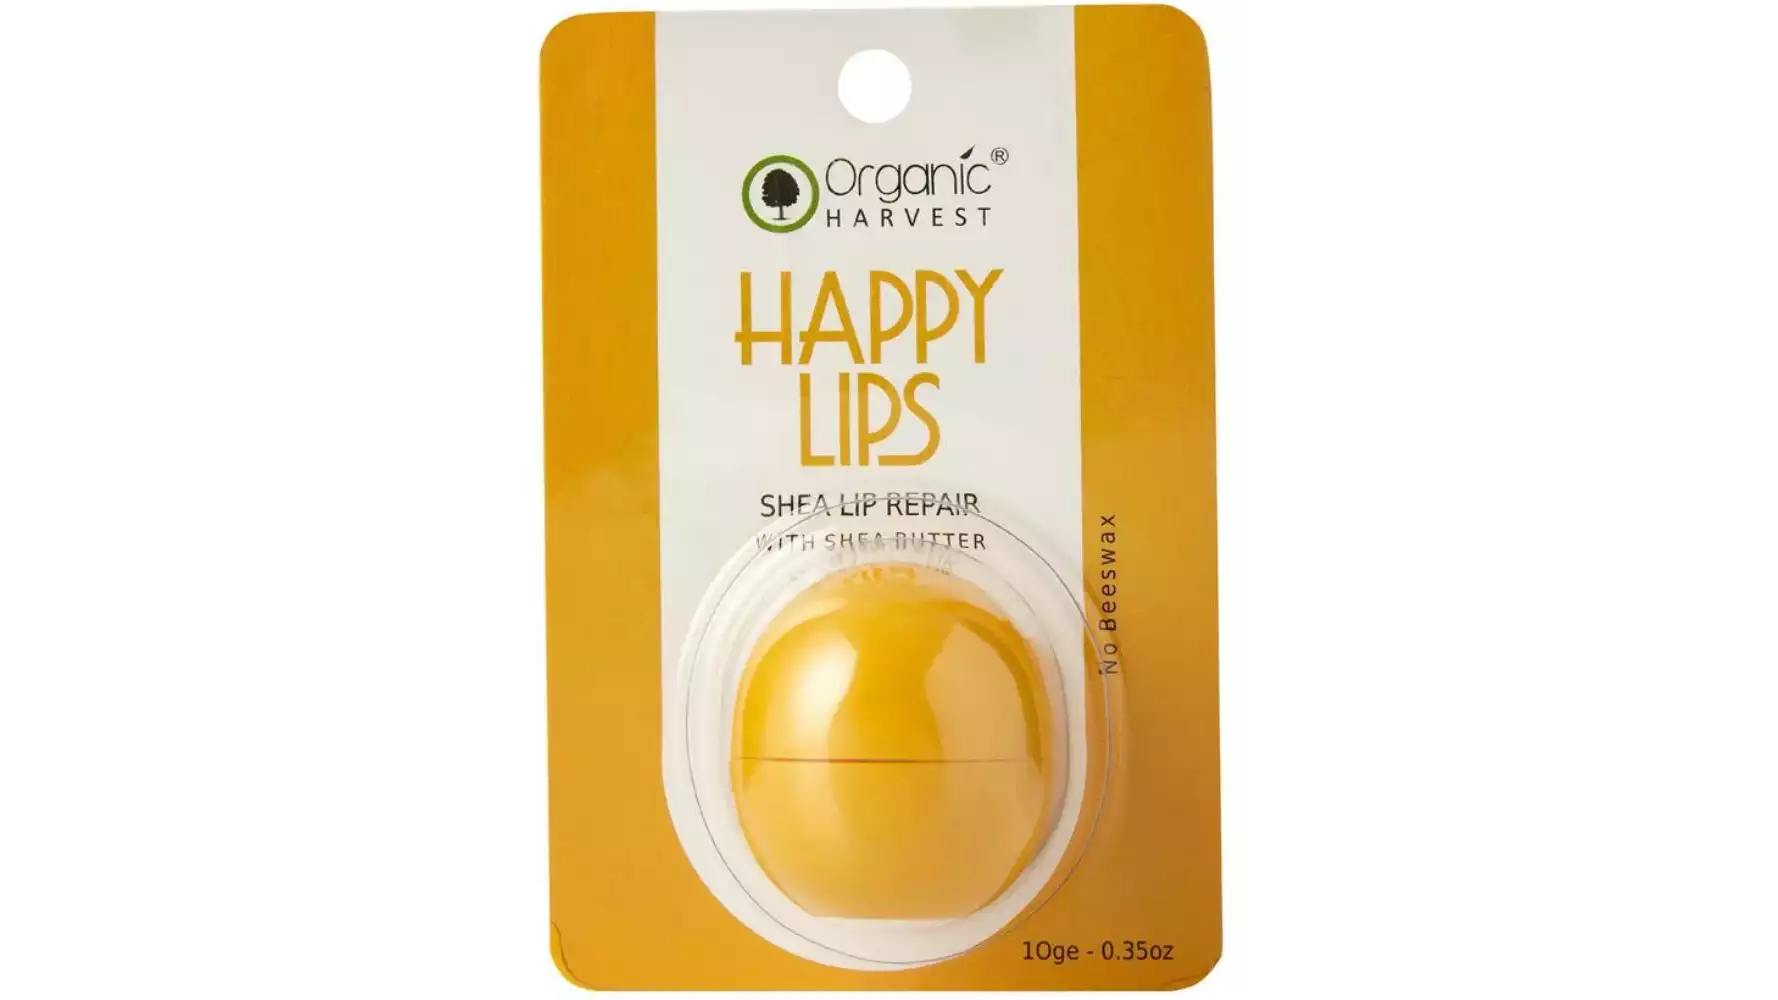 Organic Harvest Happy Lips Shea Lip Repair (10g)